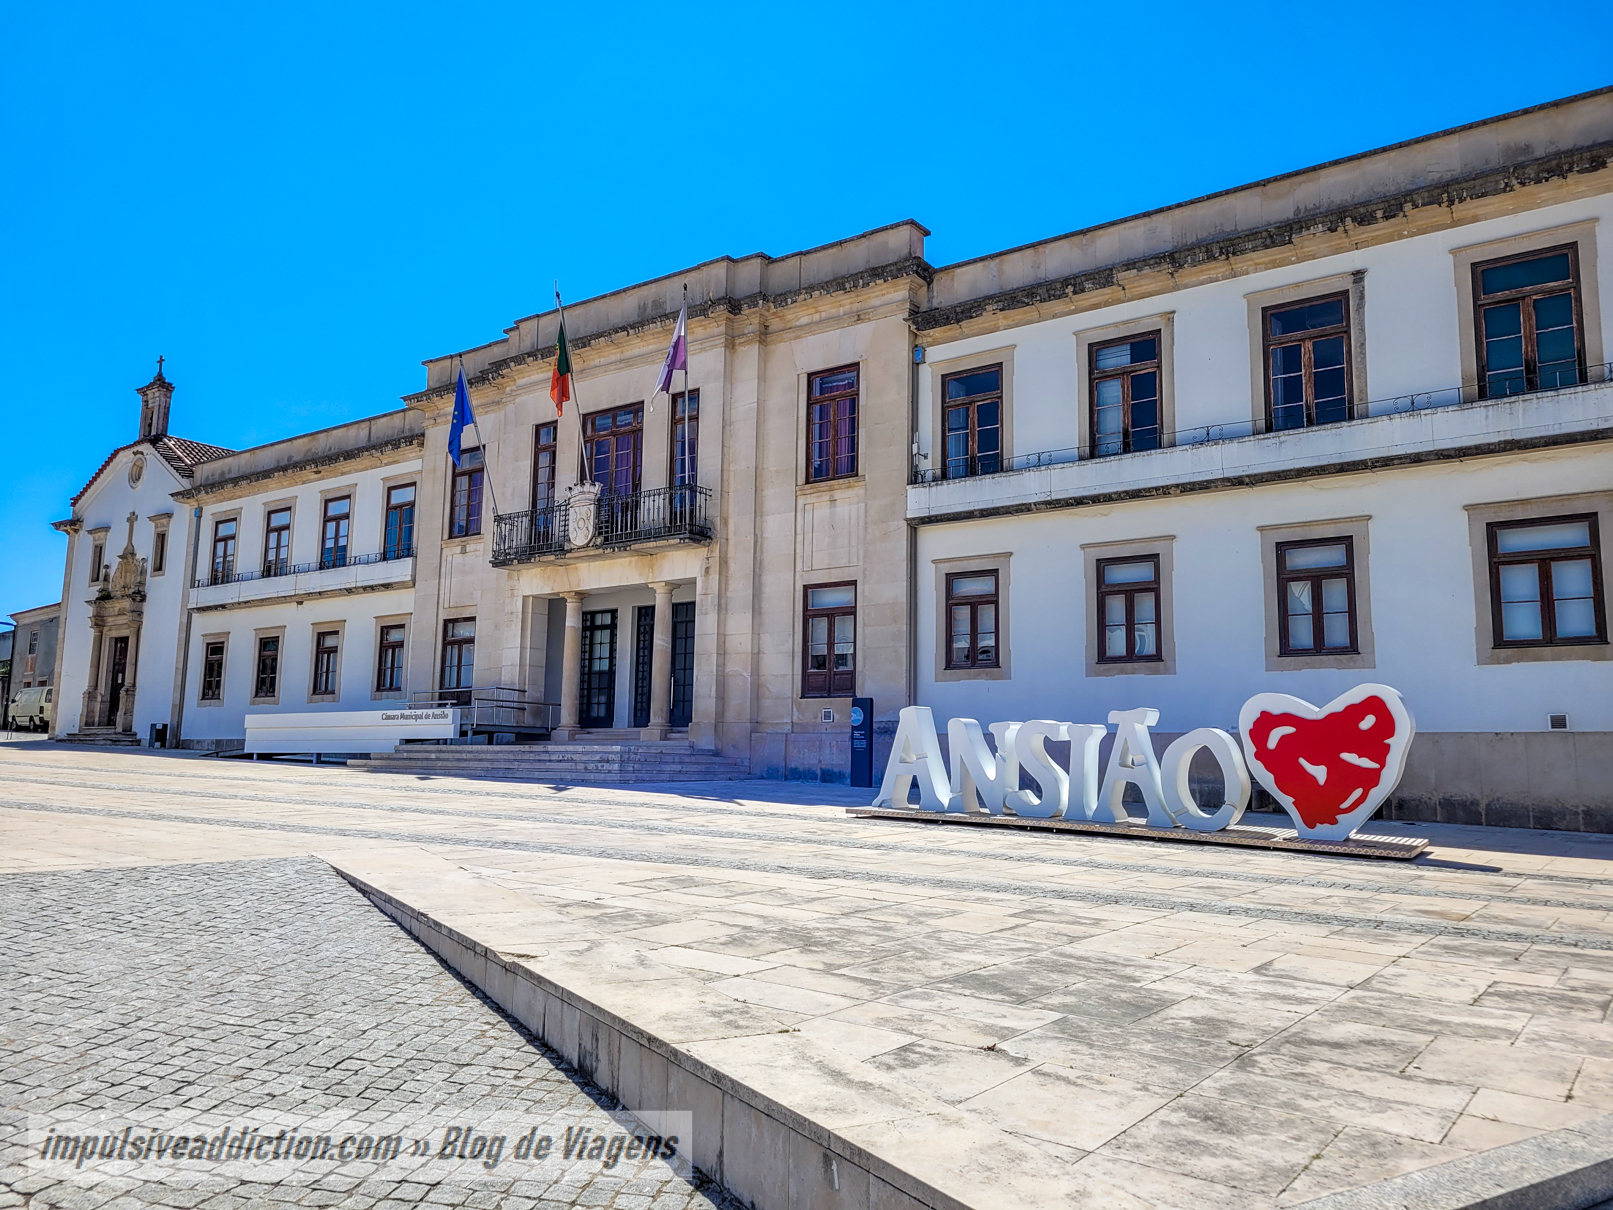 Câmara Municipal de Ansião na Praça do Município